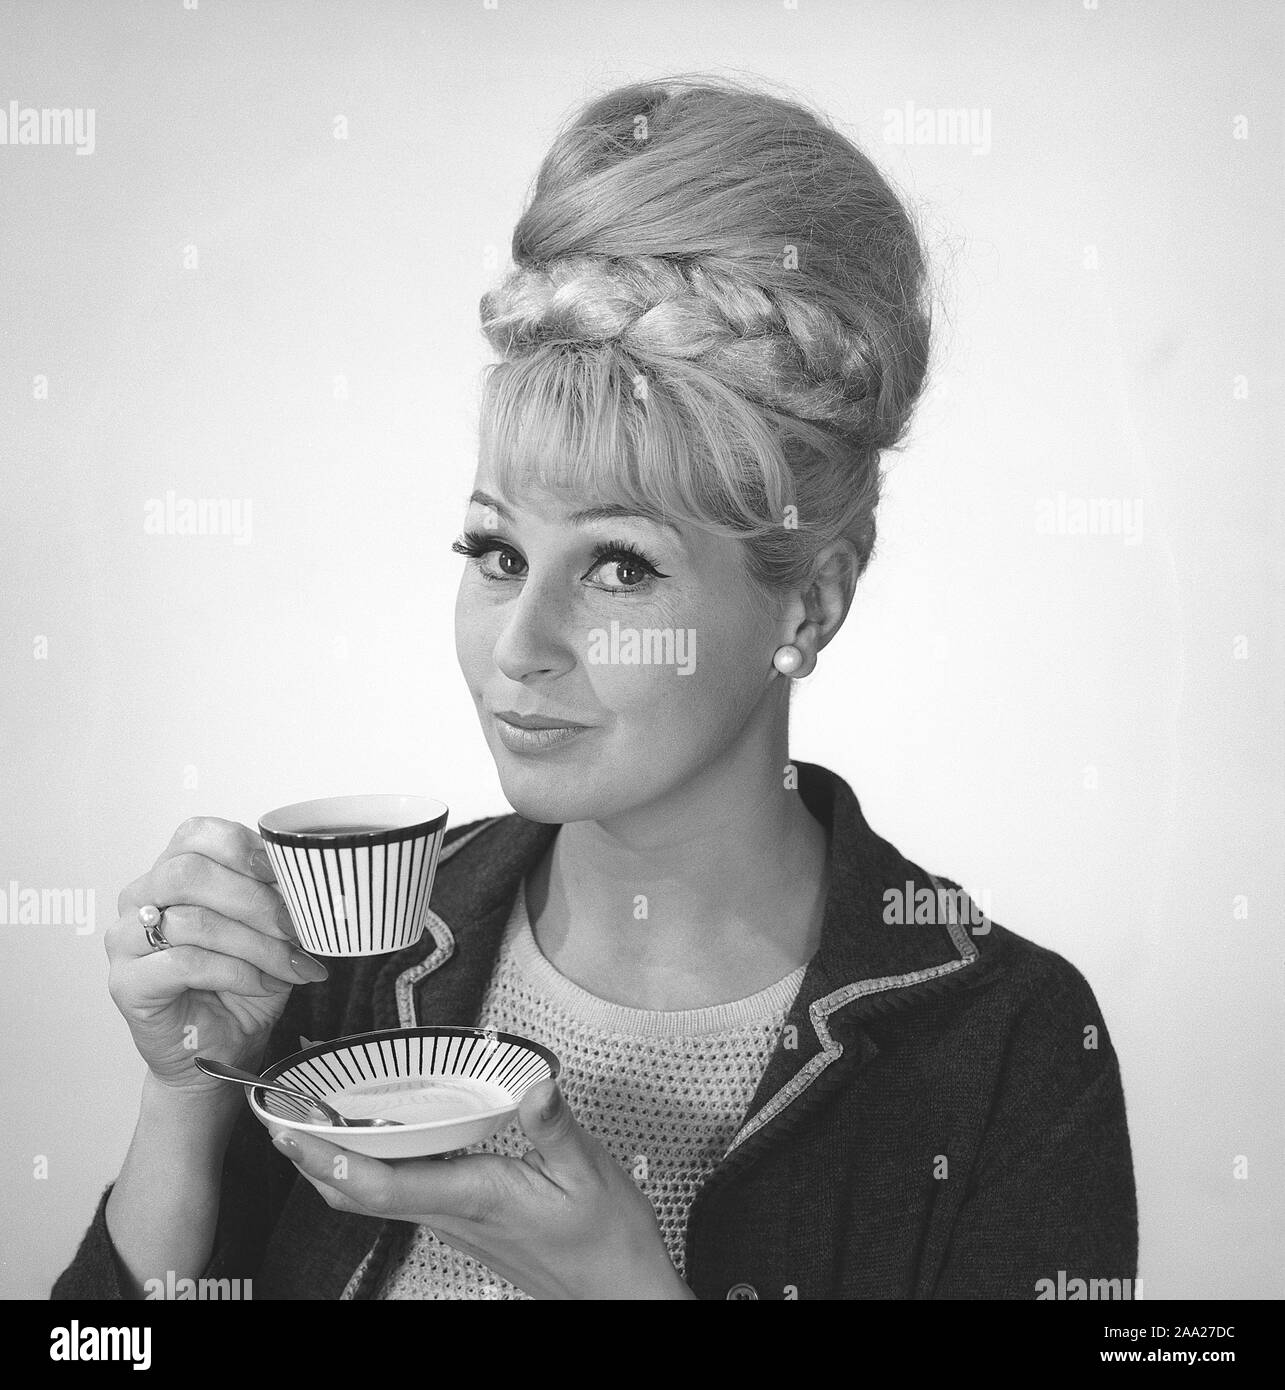 Kaffee in den 1960er Jahren. Eine Frau trinkt Kaffee aus einer Kaffeetasse mit einem 1960er Streifenmuster. Sie hat ihr Haar in den typischen Bienenstock Frisur, in denen lange Haare auf dem Kopf aufgetürmt ist und eine gewisse Ähnlichkeit mit der Form eines traditionellen Bienenstock. Schweden 1962. Ref BV 97-8 Stockfoto